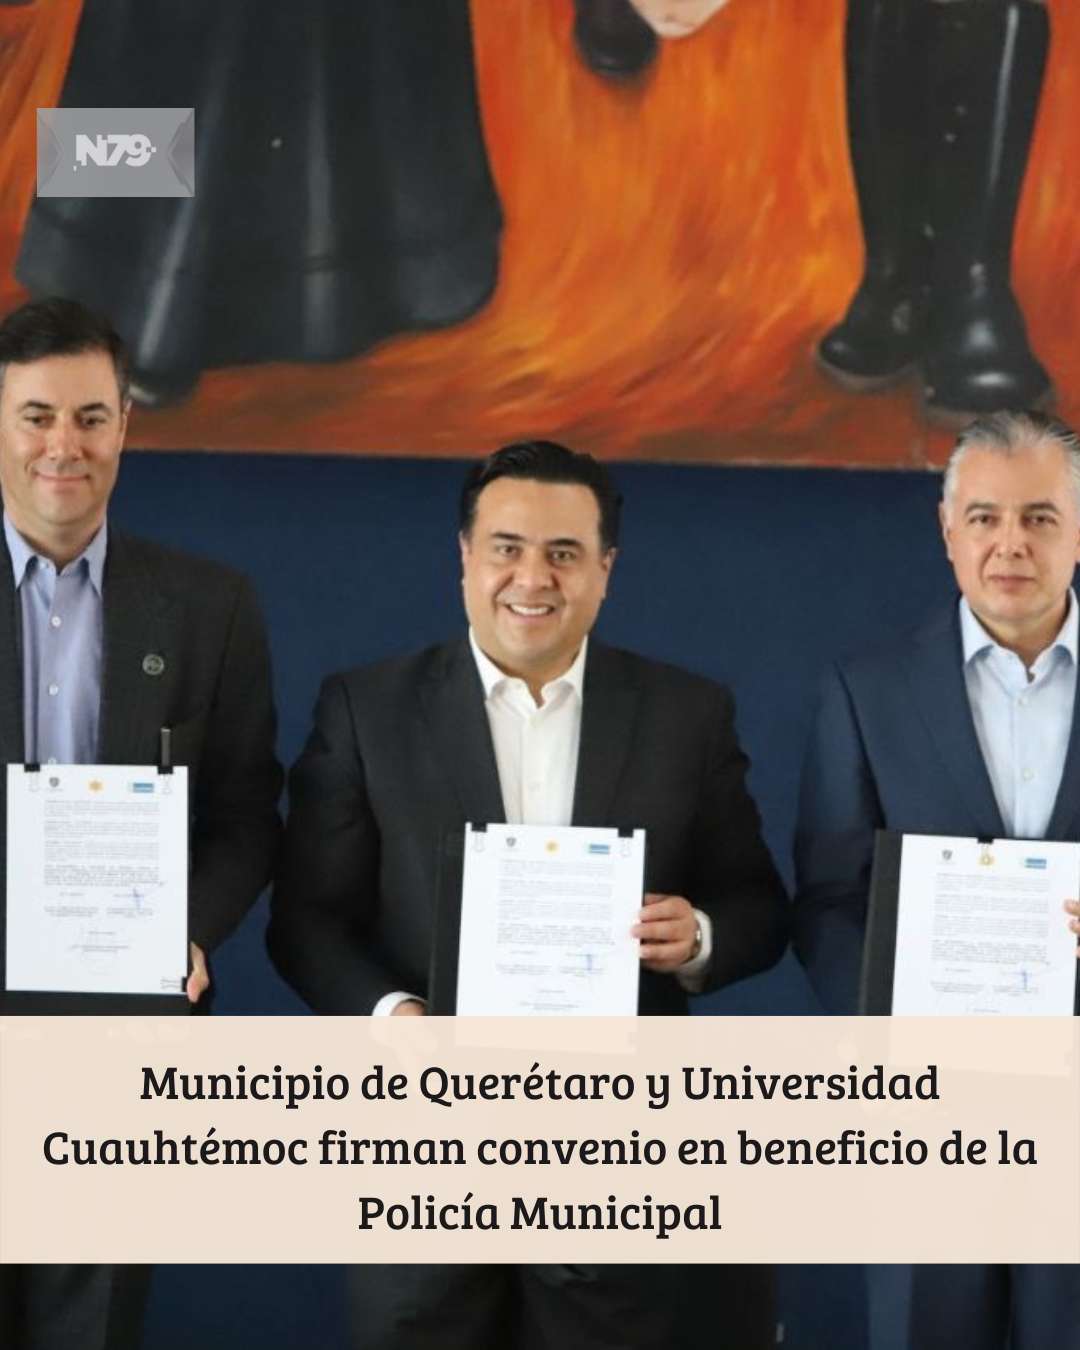 Municipio de Querétaro y Universidad Cuauhtémoc firman convenio en beneficio de la Policía Municipal